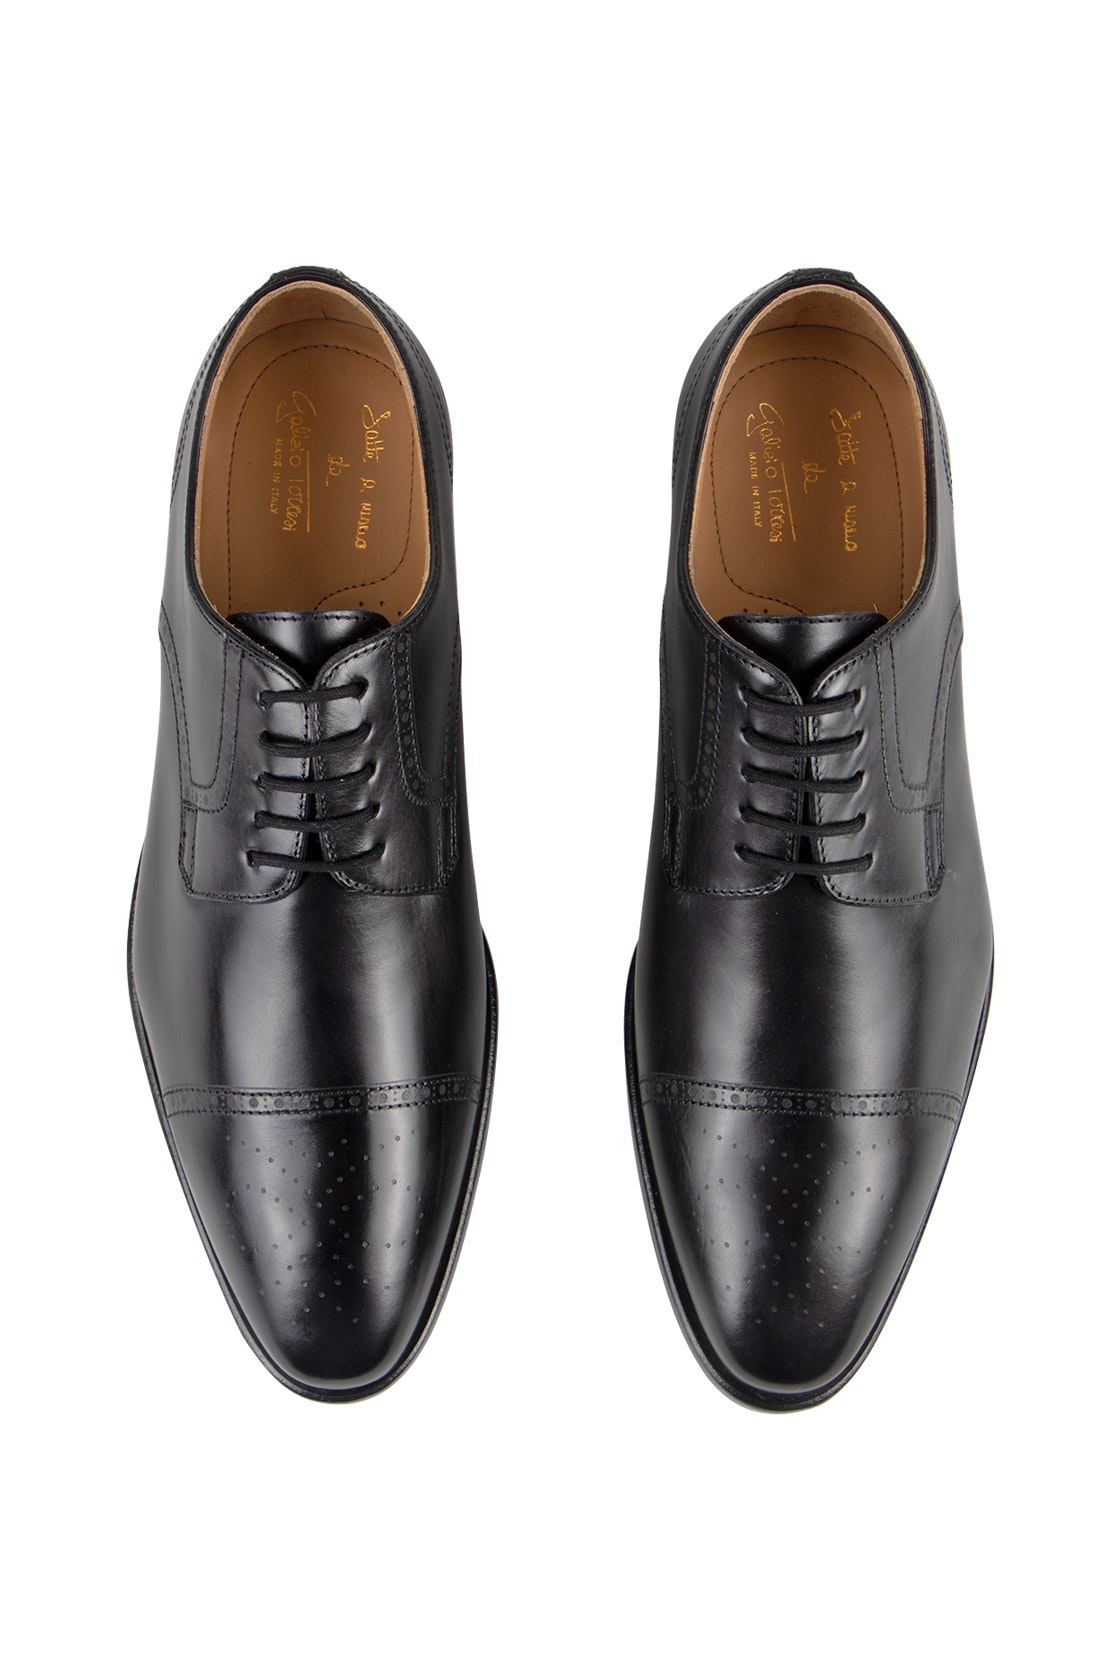 Galizio Torresi Leather Lace Up Shoe Black